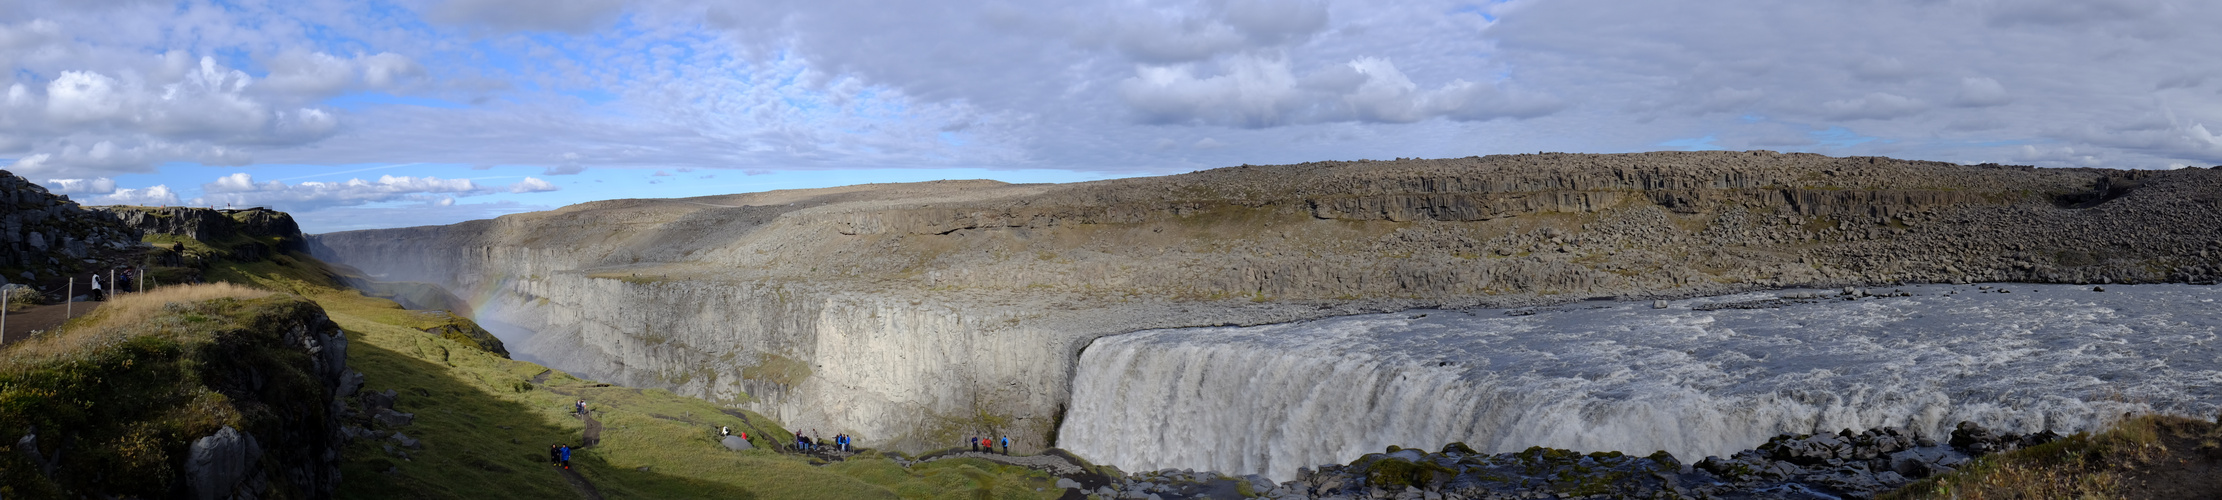 Islands Wasserfall Dettifoss